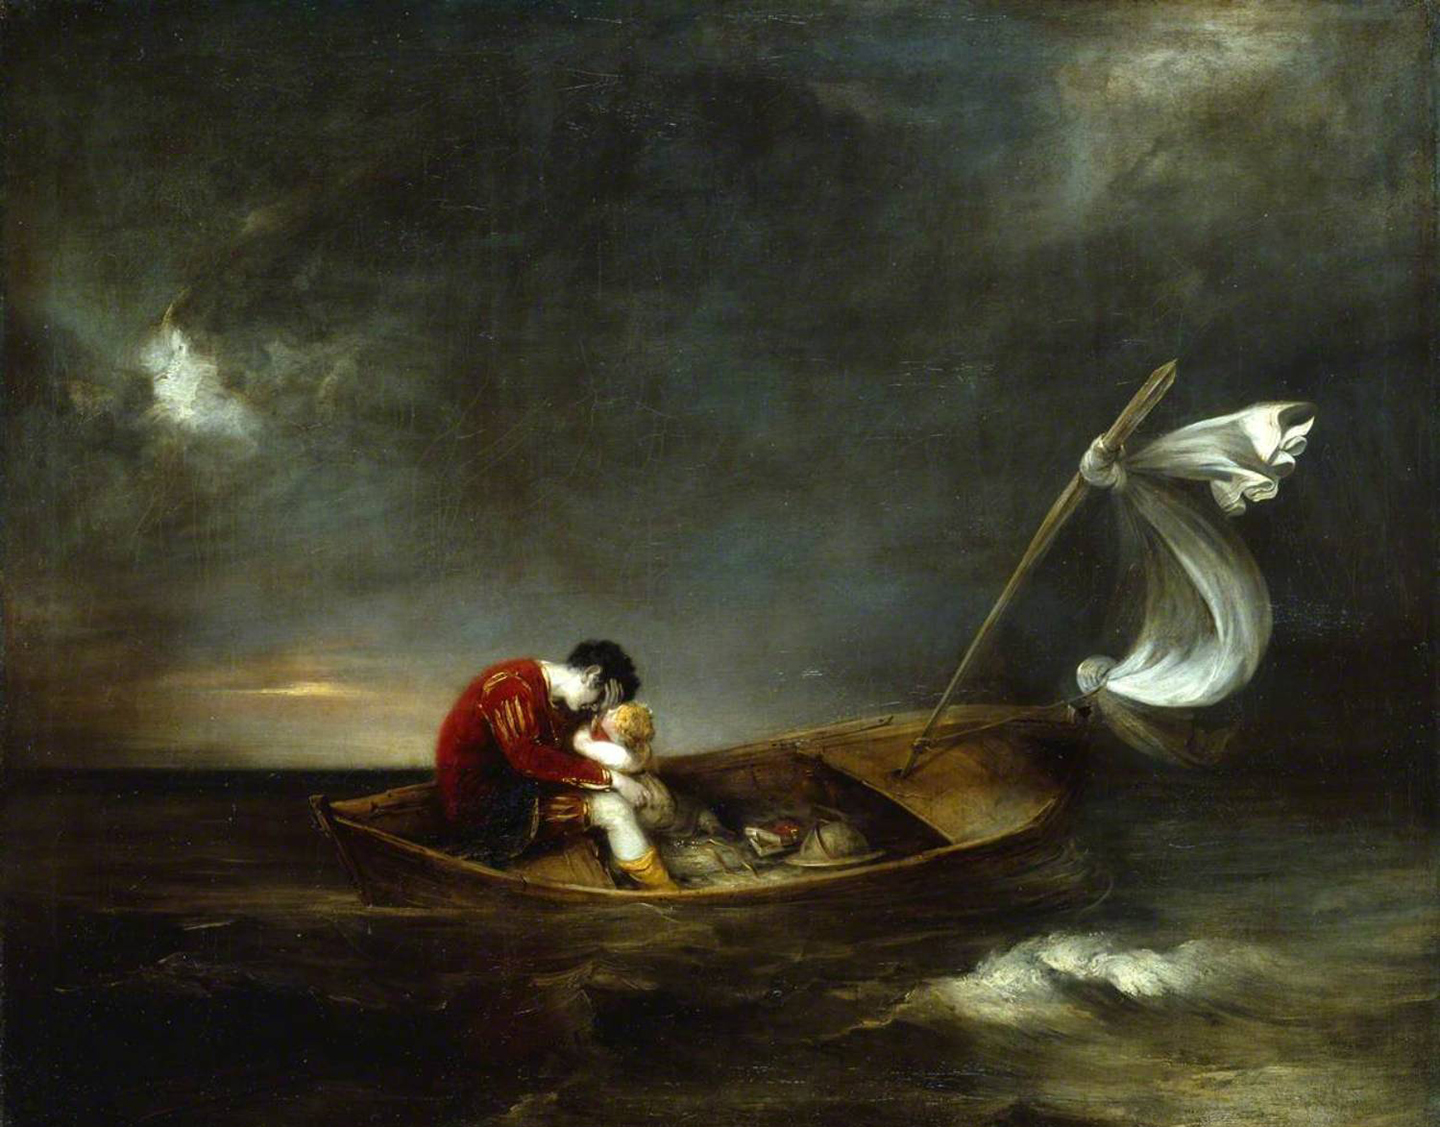 Bị trục xuất khỏi thành Milan, công tước Prospero và con gái Miranda vượt biển để đến một hòn đảo xa xôi, nơi vở kịch “The Tempest” (Giông tố) diễn ra. Tác phẩm “Prospero and Miranda” (Công tước Prospero và con gái Miranda) của họa sĩ Henry Thomson vẽ năm 1803. Tranh sơn dầu trên vải canvas. Học viện Nghệ thuật Hoàng gia, Luân Đôn. (Ảnh: Tài liệu công cộng)